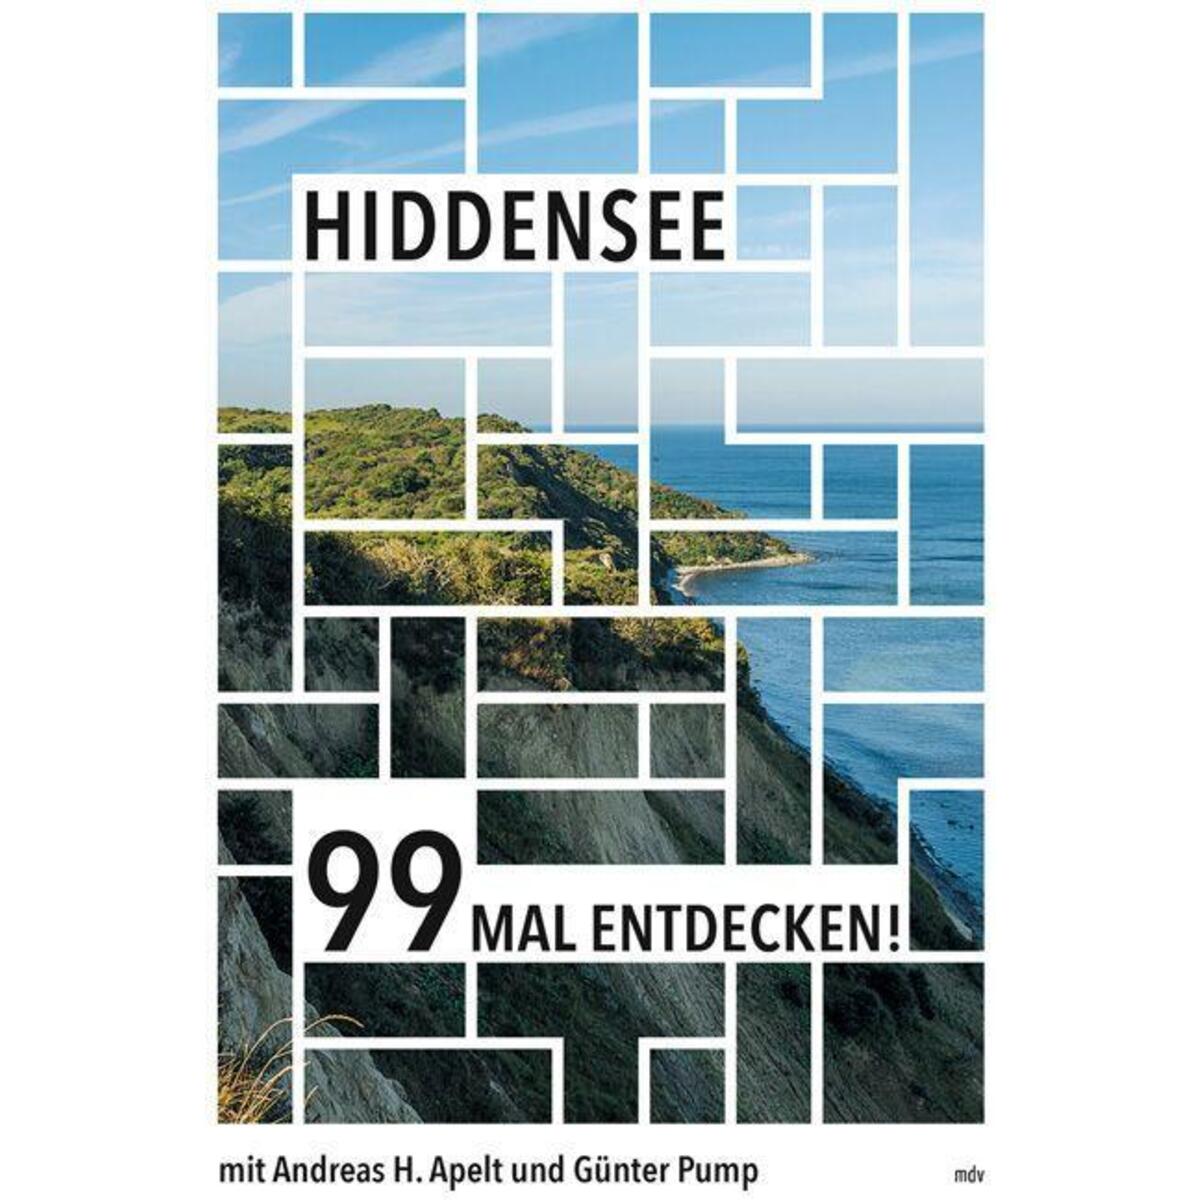 Hiddensee 99 Mal entdecken! von Mitteldeutscher Verlag